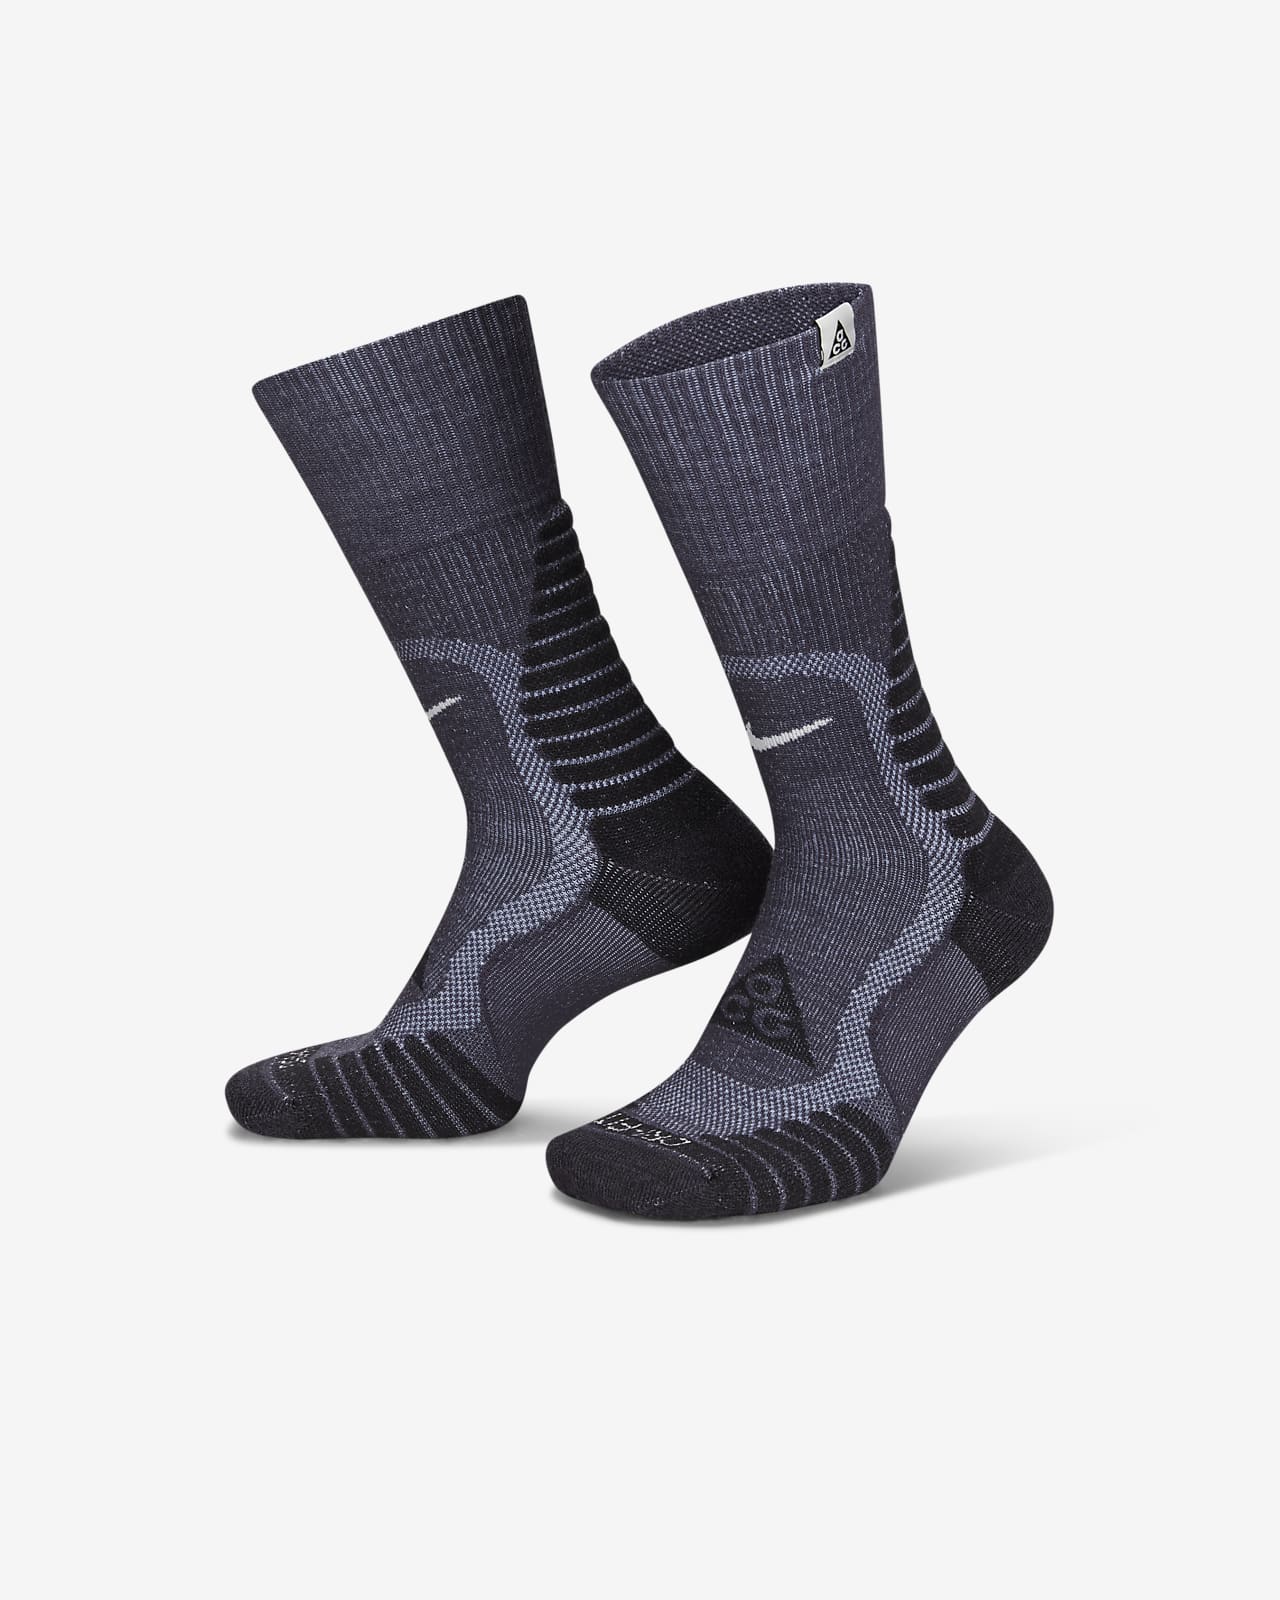 Κάλτσες μεσαίου ύψους με αντικραδασμική προστασία για υπαίθριες δραστηριότητες Nike ACG